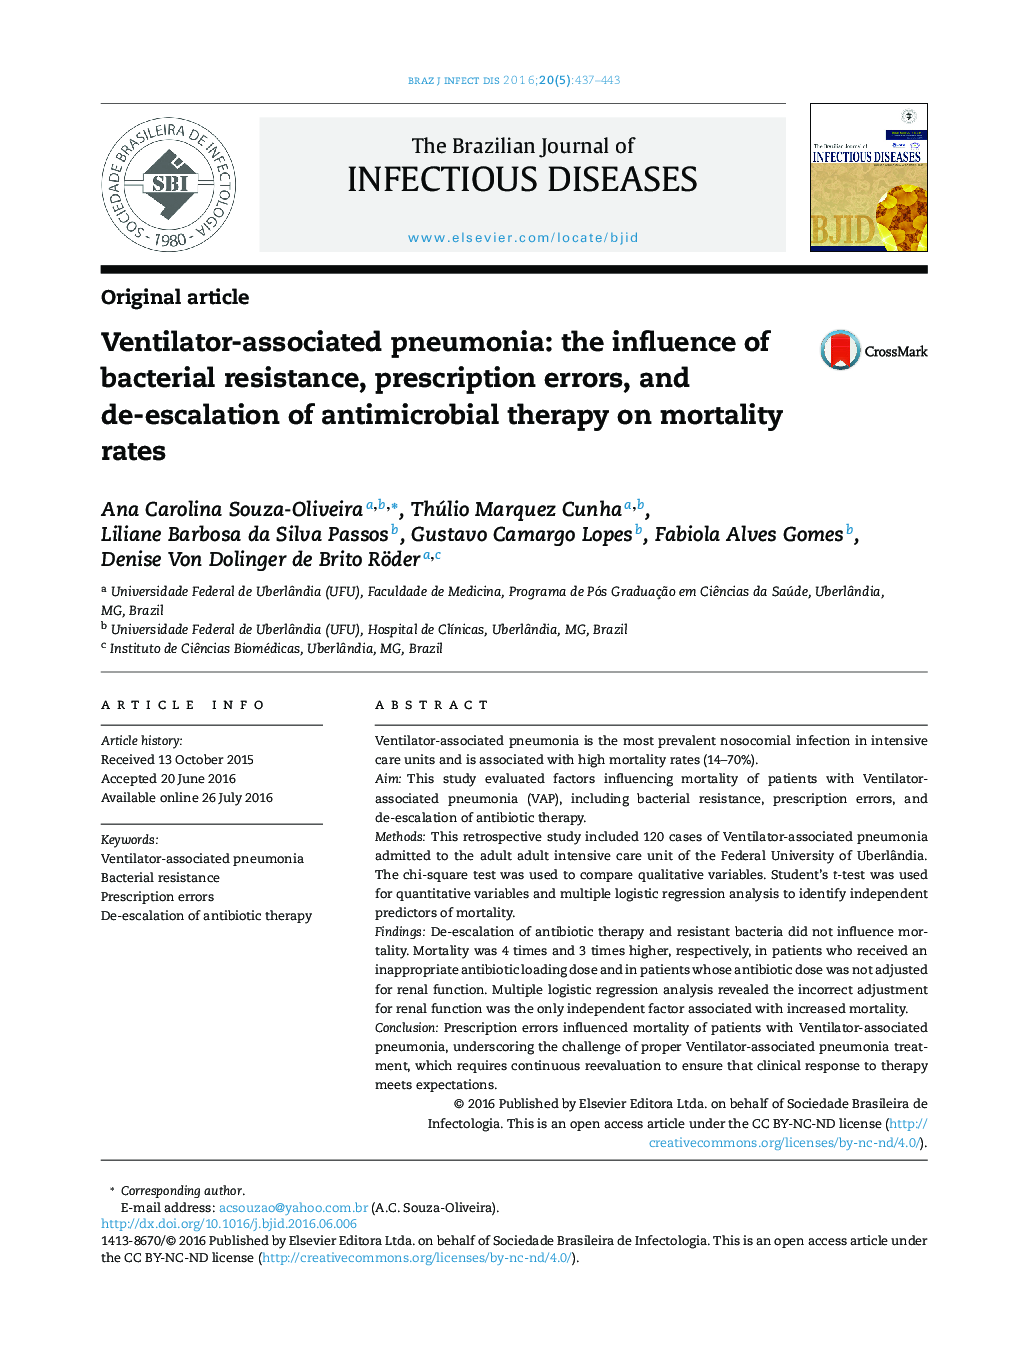 پنومونی وابسته به ونتیلاتور: تاثیر مقاومت باکتریایی، خطاهای تجویزی و محدودسازی درمان ضدمیکروبی بر میزان مرگ و میر